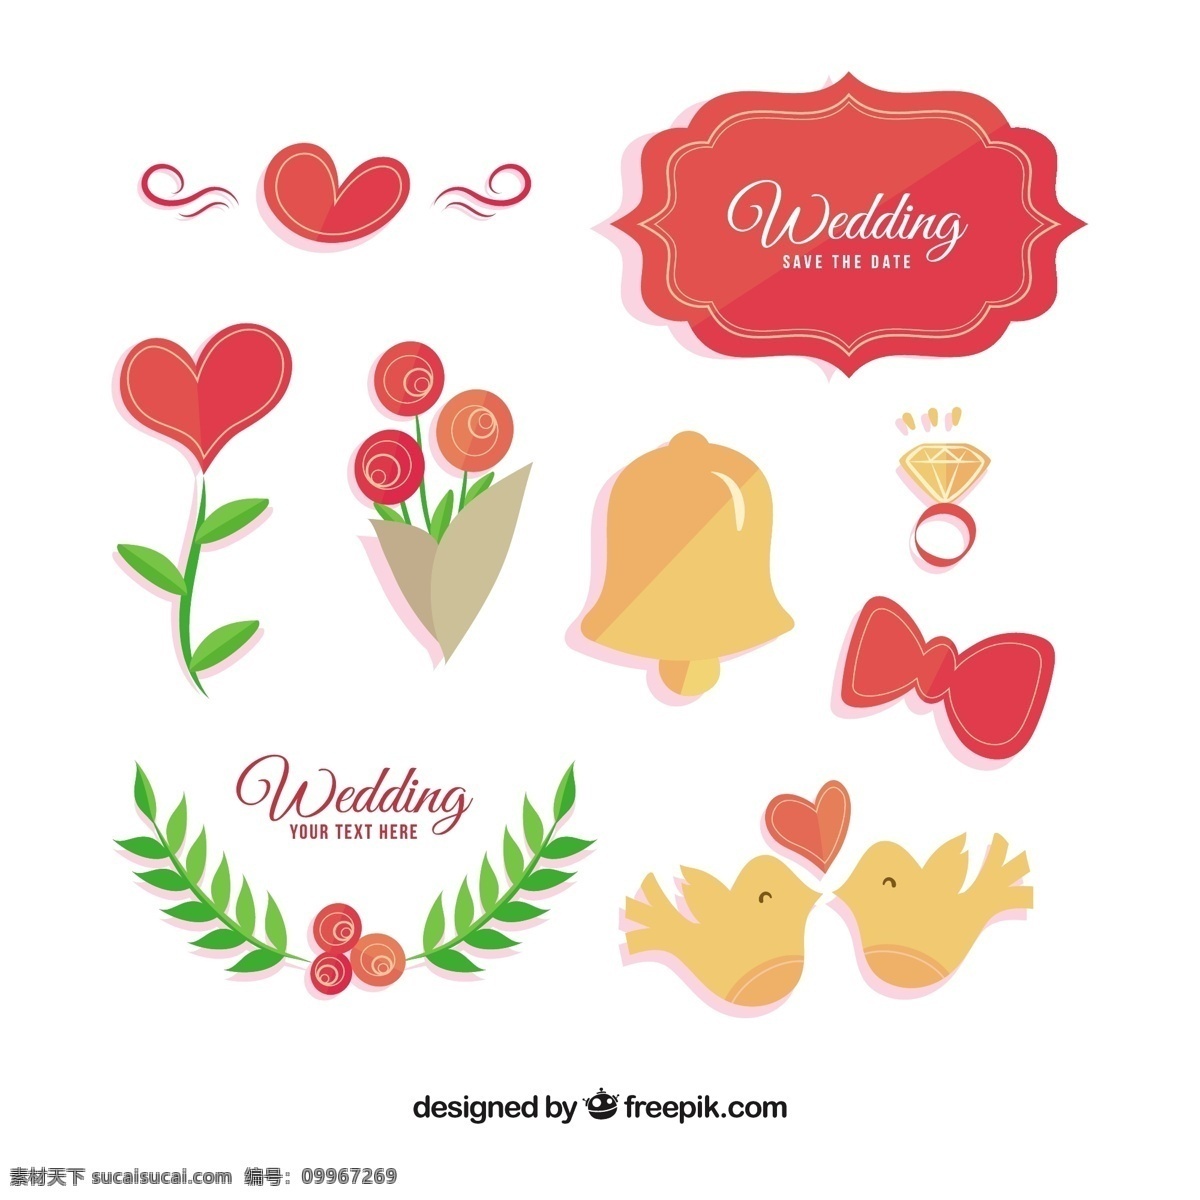 彩色 婚礼用品 装饰 图形 矢量 彩色婚礼用品 装饰图形 矢量素材